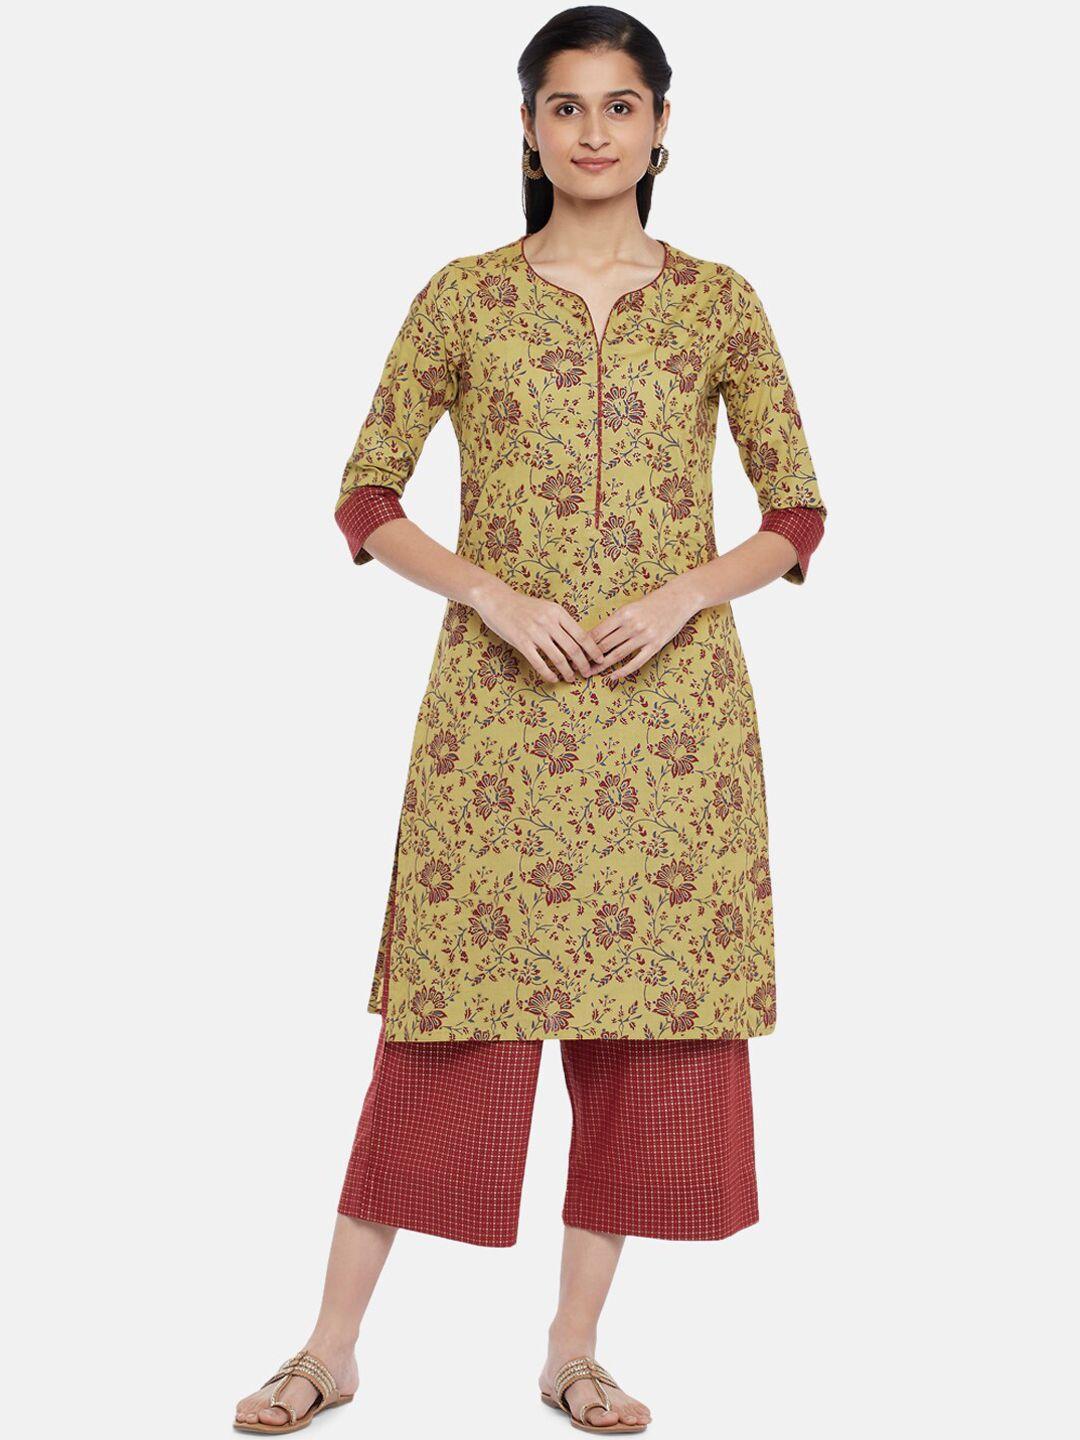 rangmanch by pantaloons women mustard yellow pure cotton kurta set